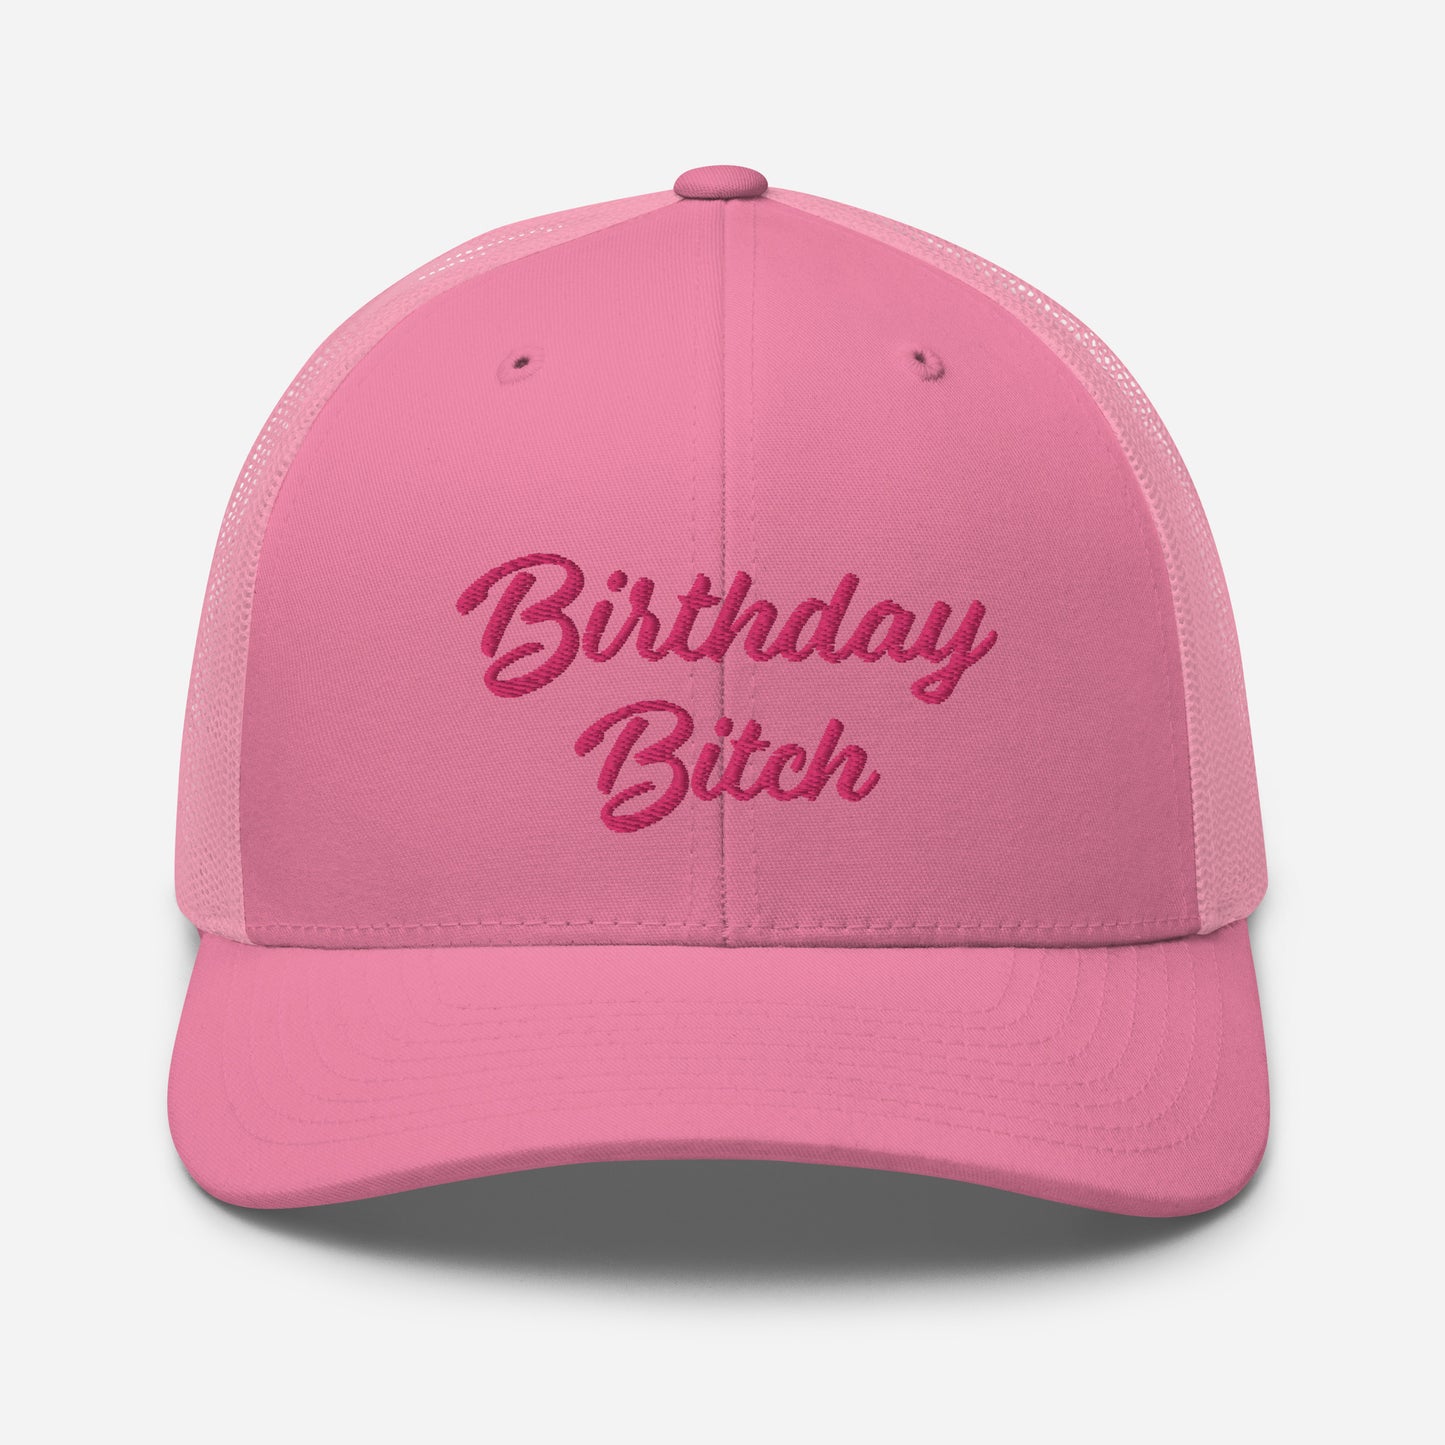 Birthday Bitch | Retro Trucker Hat | Embroidered